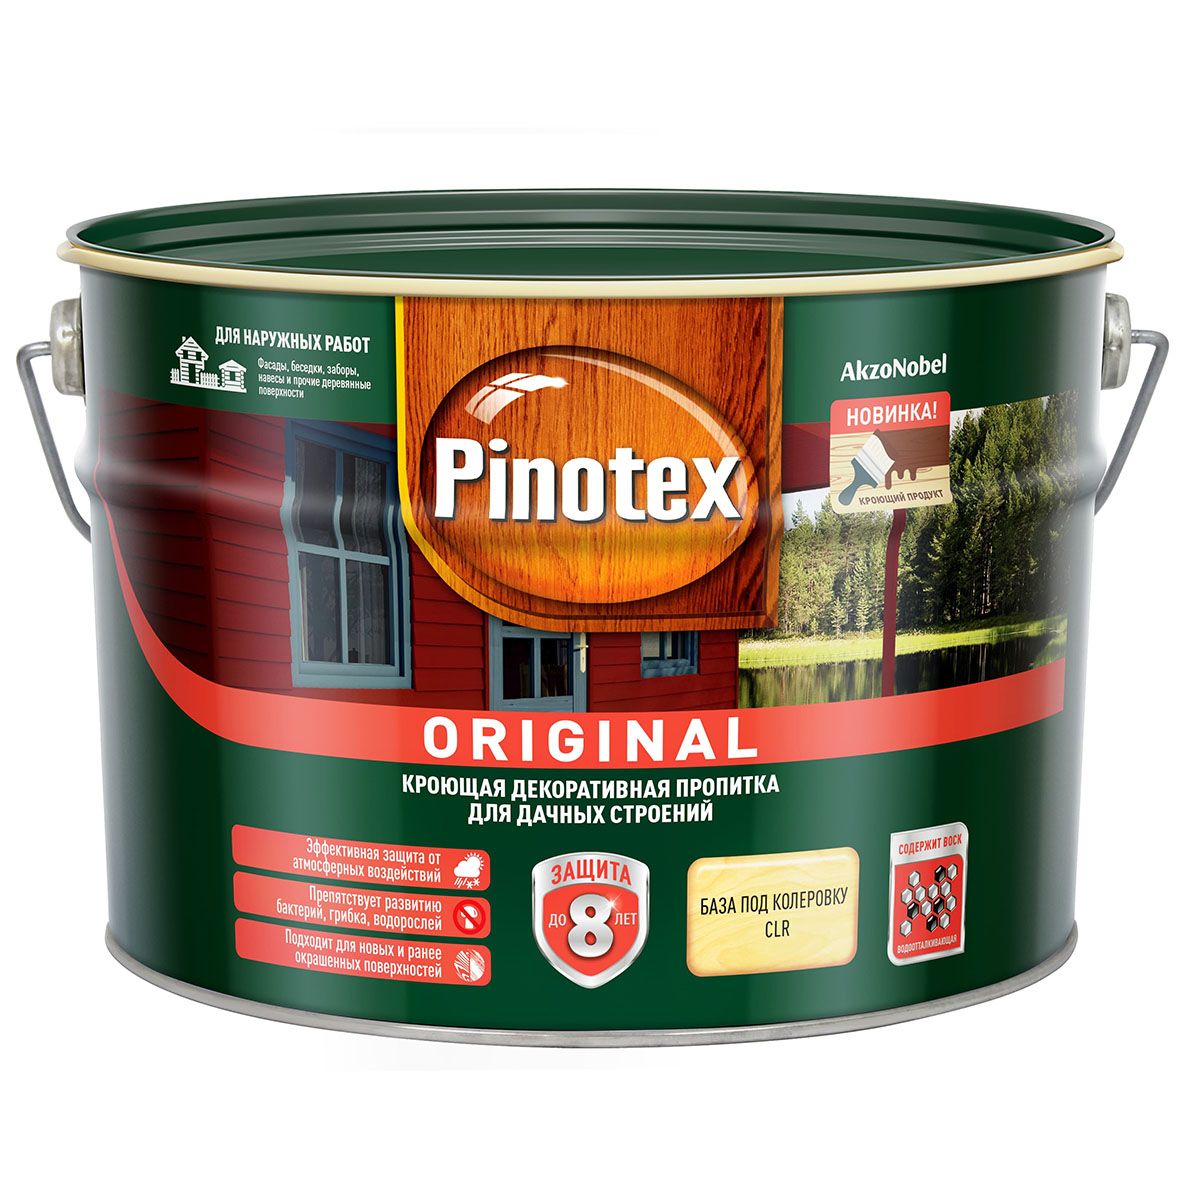 Пропитка для дерева Pinotex Original, база под колеровку, BC, 8,4 л